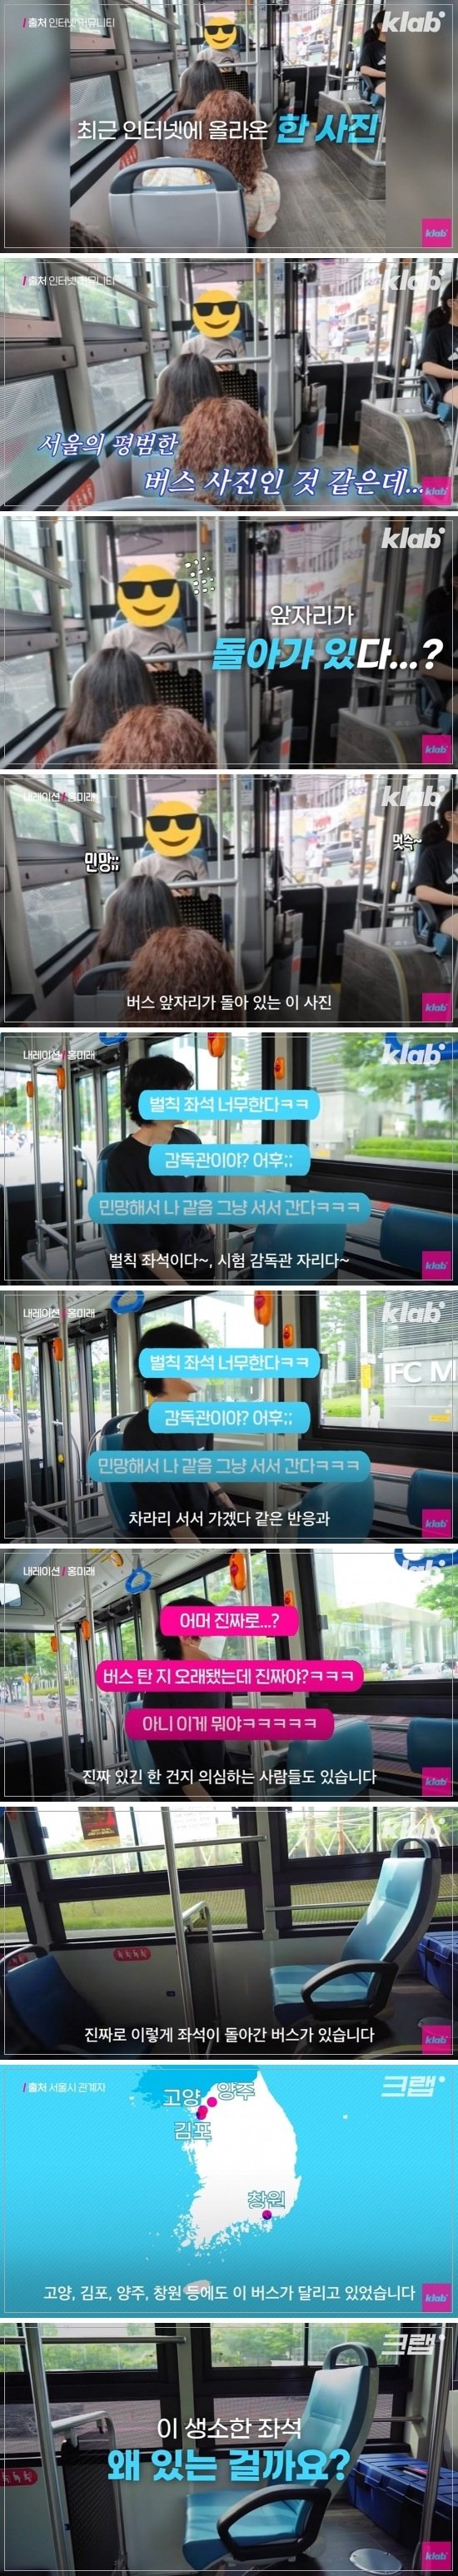 이게 진짜야?? 요즘 서울에 있는 벌칙 좌석 버스란???